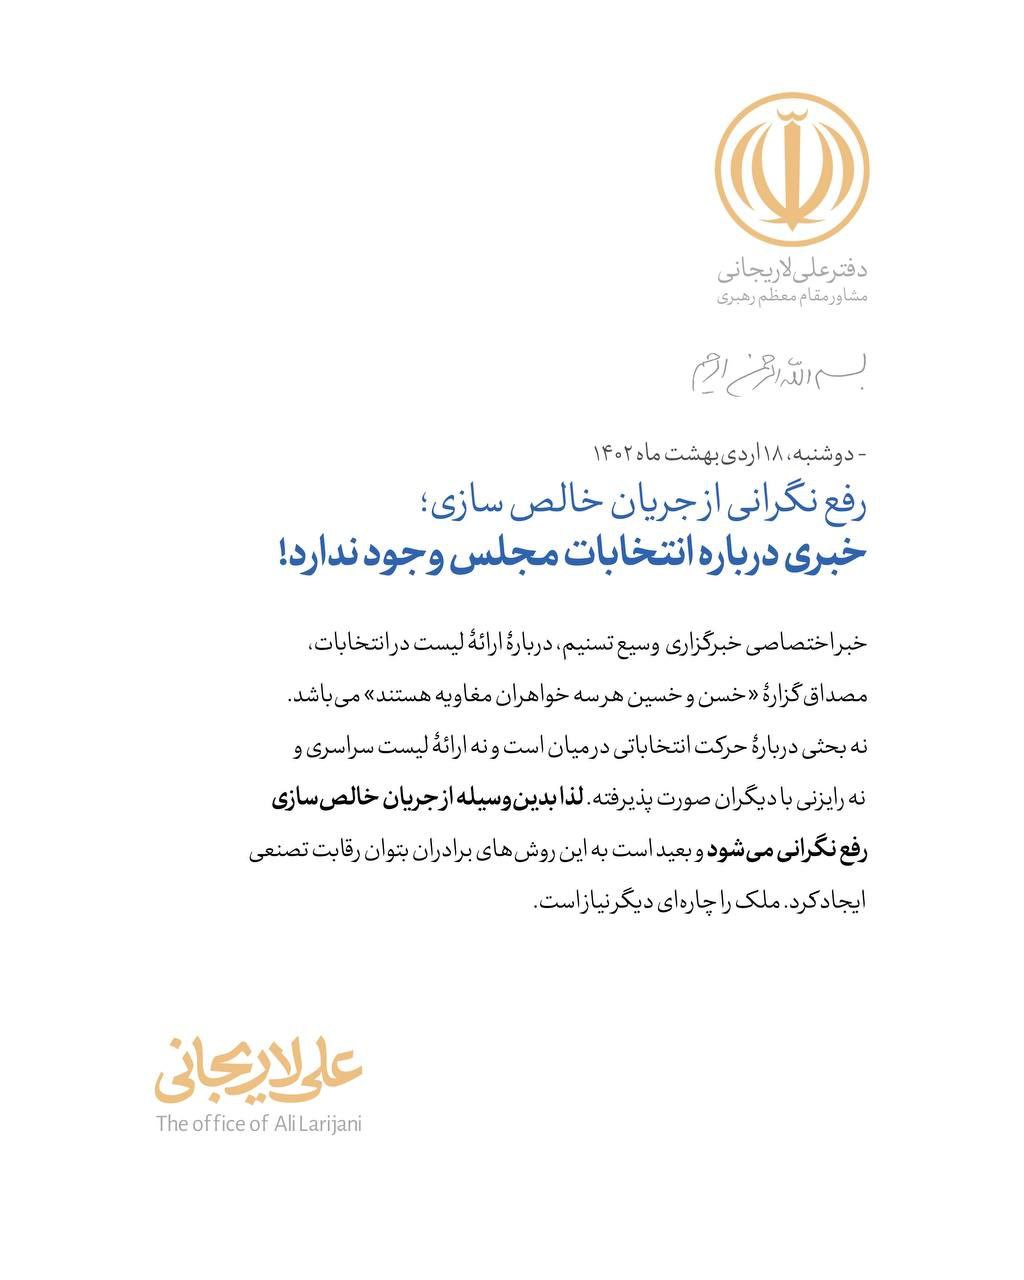 اخبار ضدونقیض درباره فهرست انتخاباتی لاریجانی